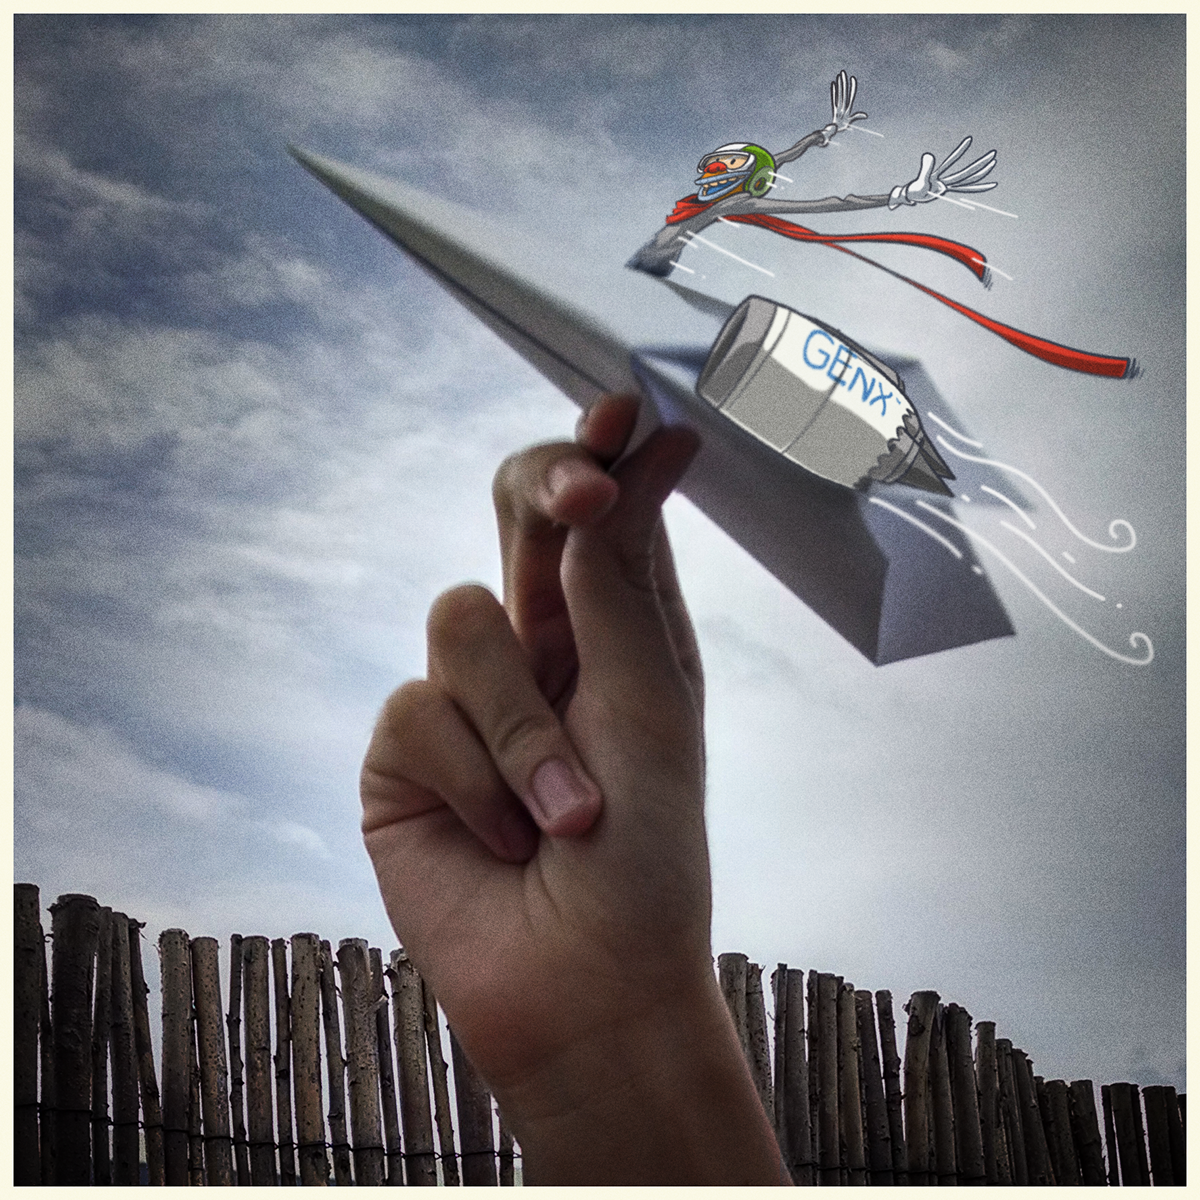 general eletrons genx GeCelma airplanes paper photo aviãozinho Leo leocartunista Leonardo